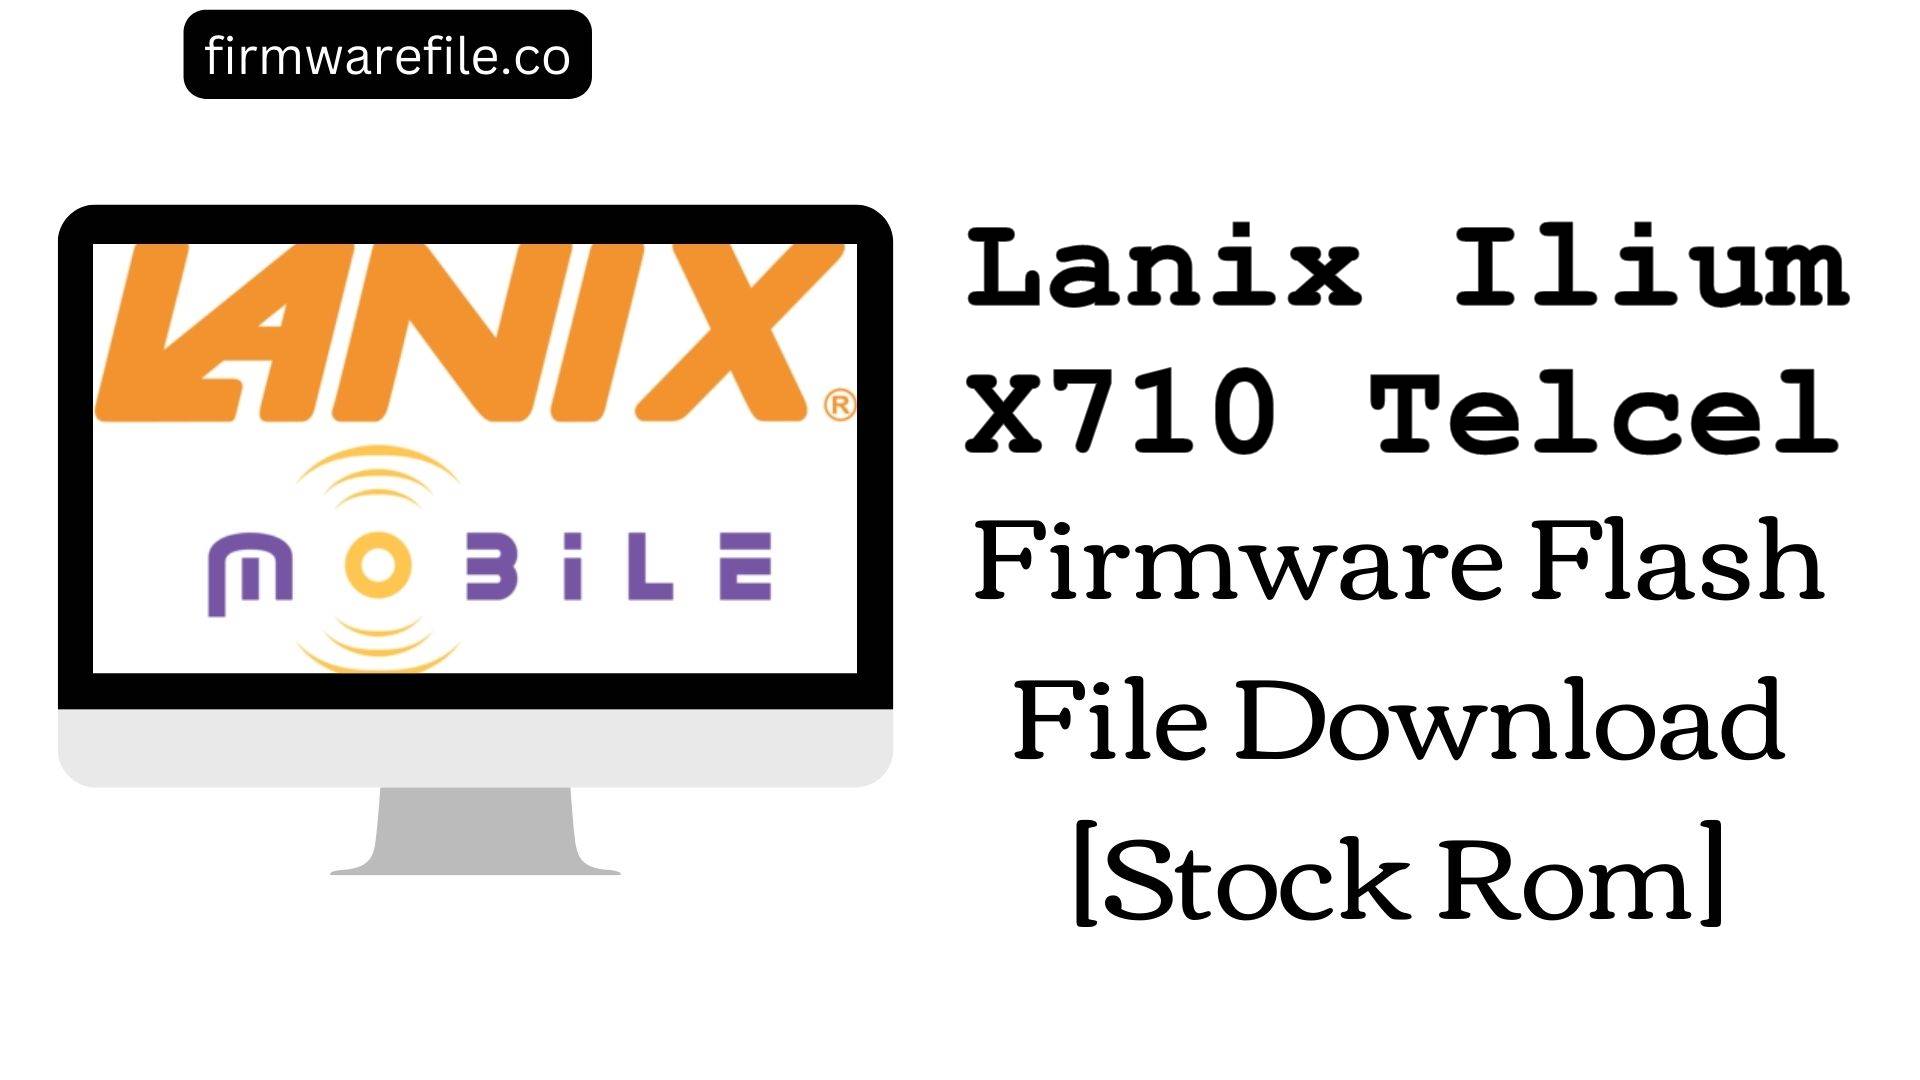 Lanix Ilium X710 Telcel